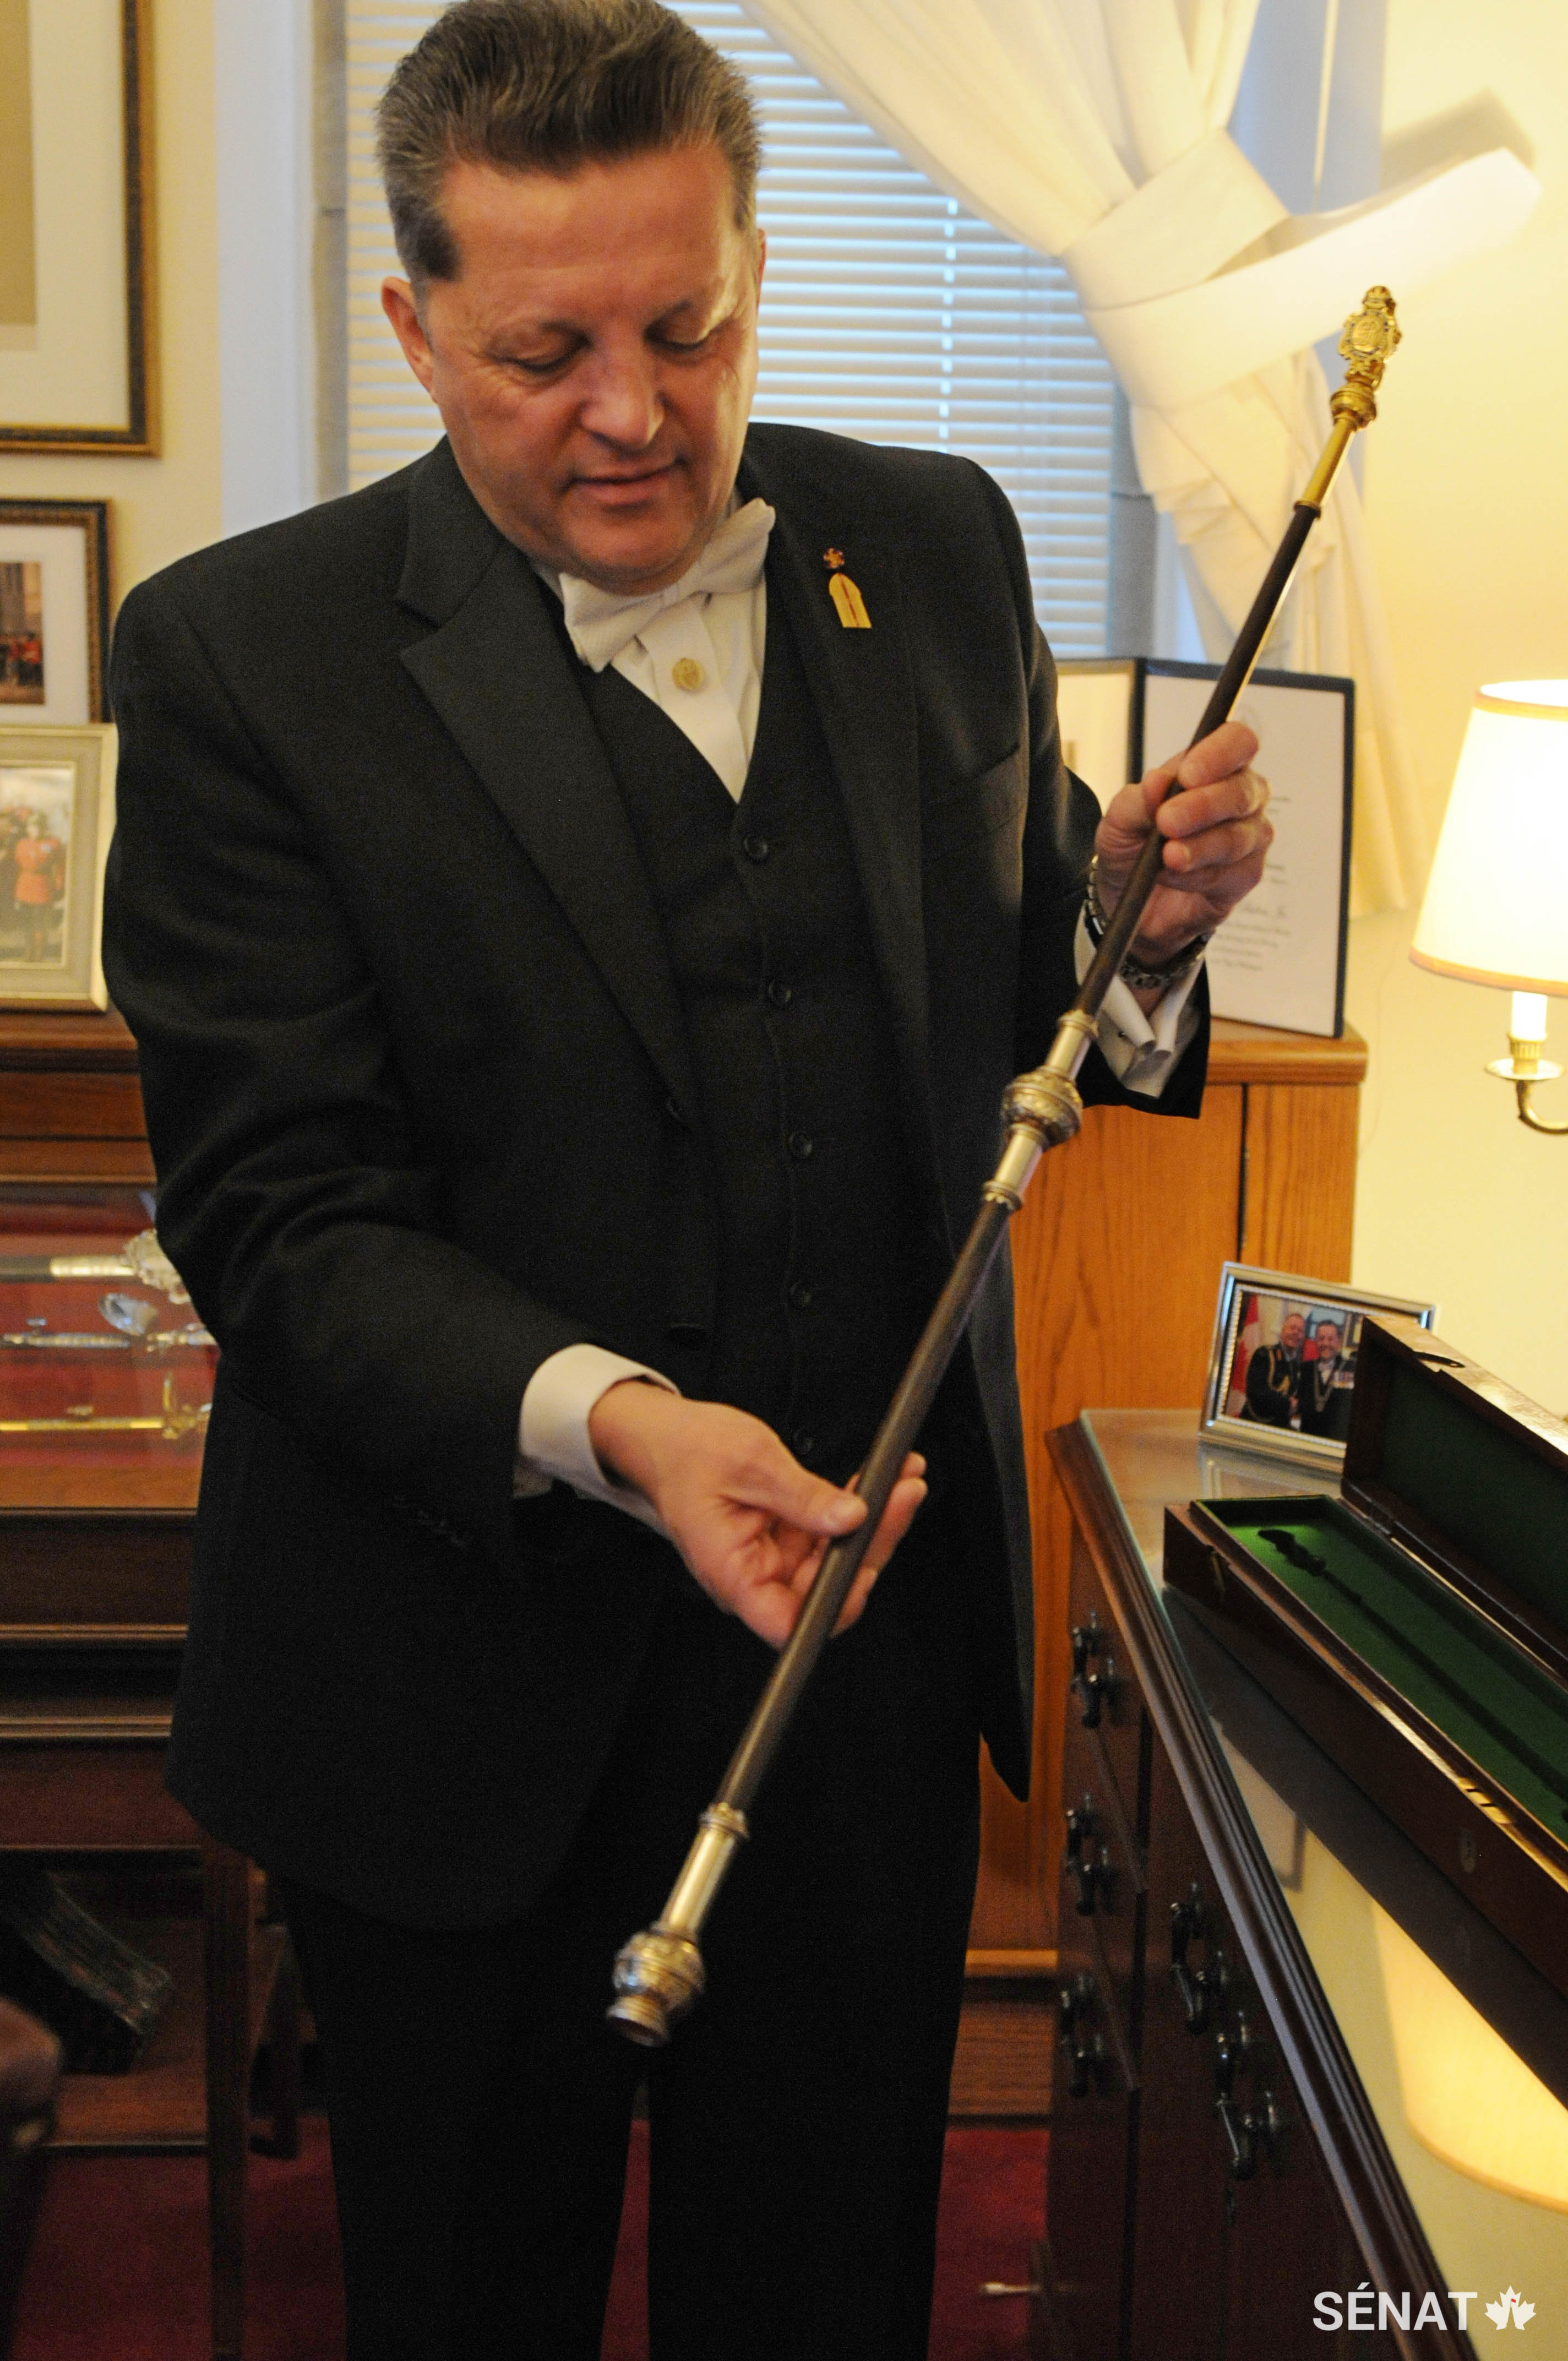 L’huissier du bâton noir, J. Greg Peters, présente le bâton noir actuellement en usage. En 2016, ce bâton a fait l’objet d’une restauration royale, un cadeau offert au Sénat du Canada par la reine Elizabeth II à l’occasion du sesquicentenaire de la Confédération. L’étui en velours vert date de l’époque de la présentation du bâton noir au premier ministre du Canada, Robert Borden, le 21 juin 1918.